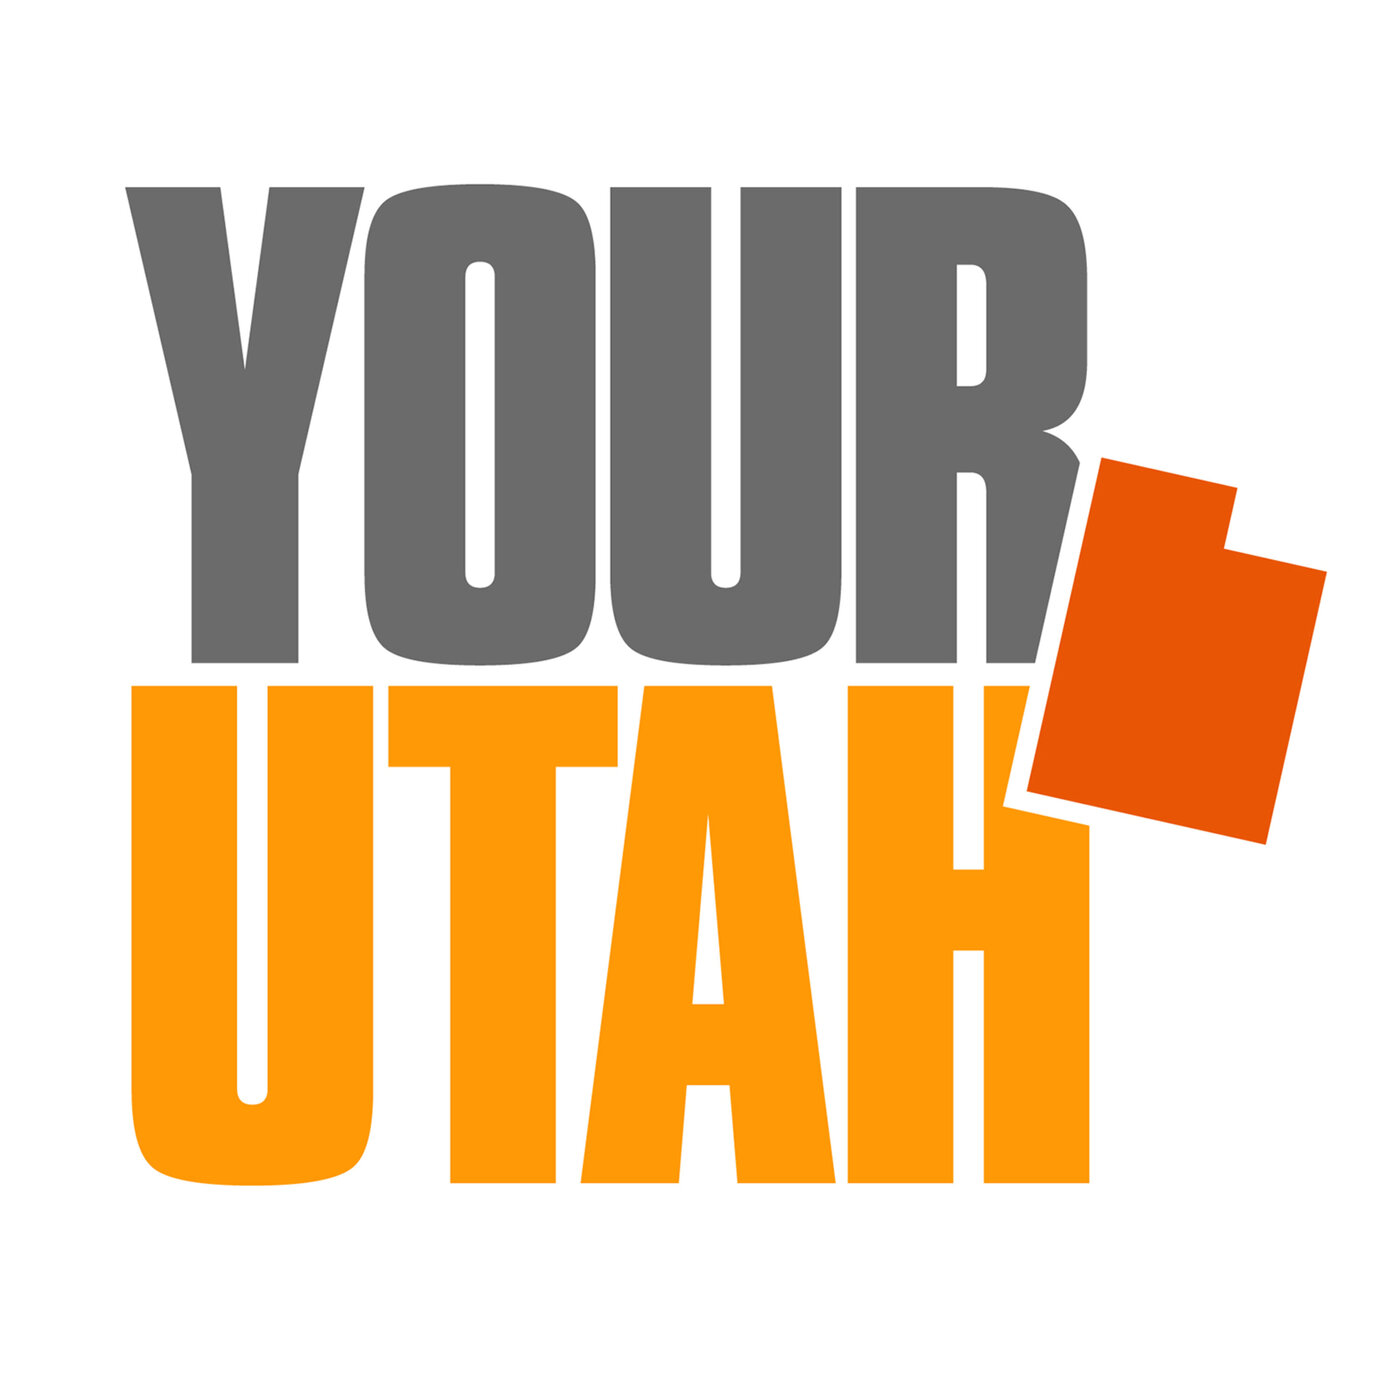 Exploring the University of Utah